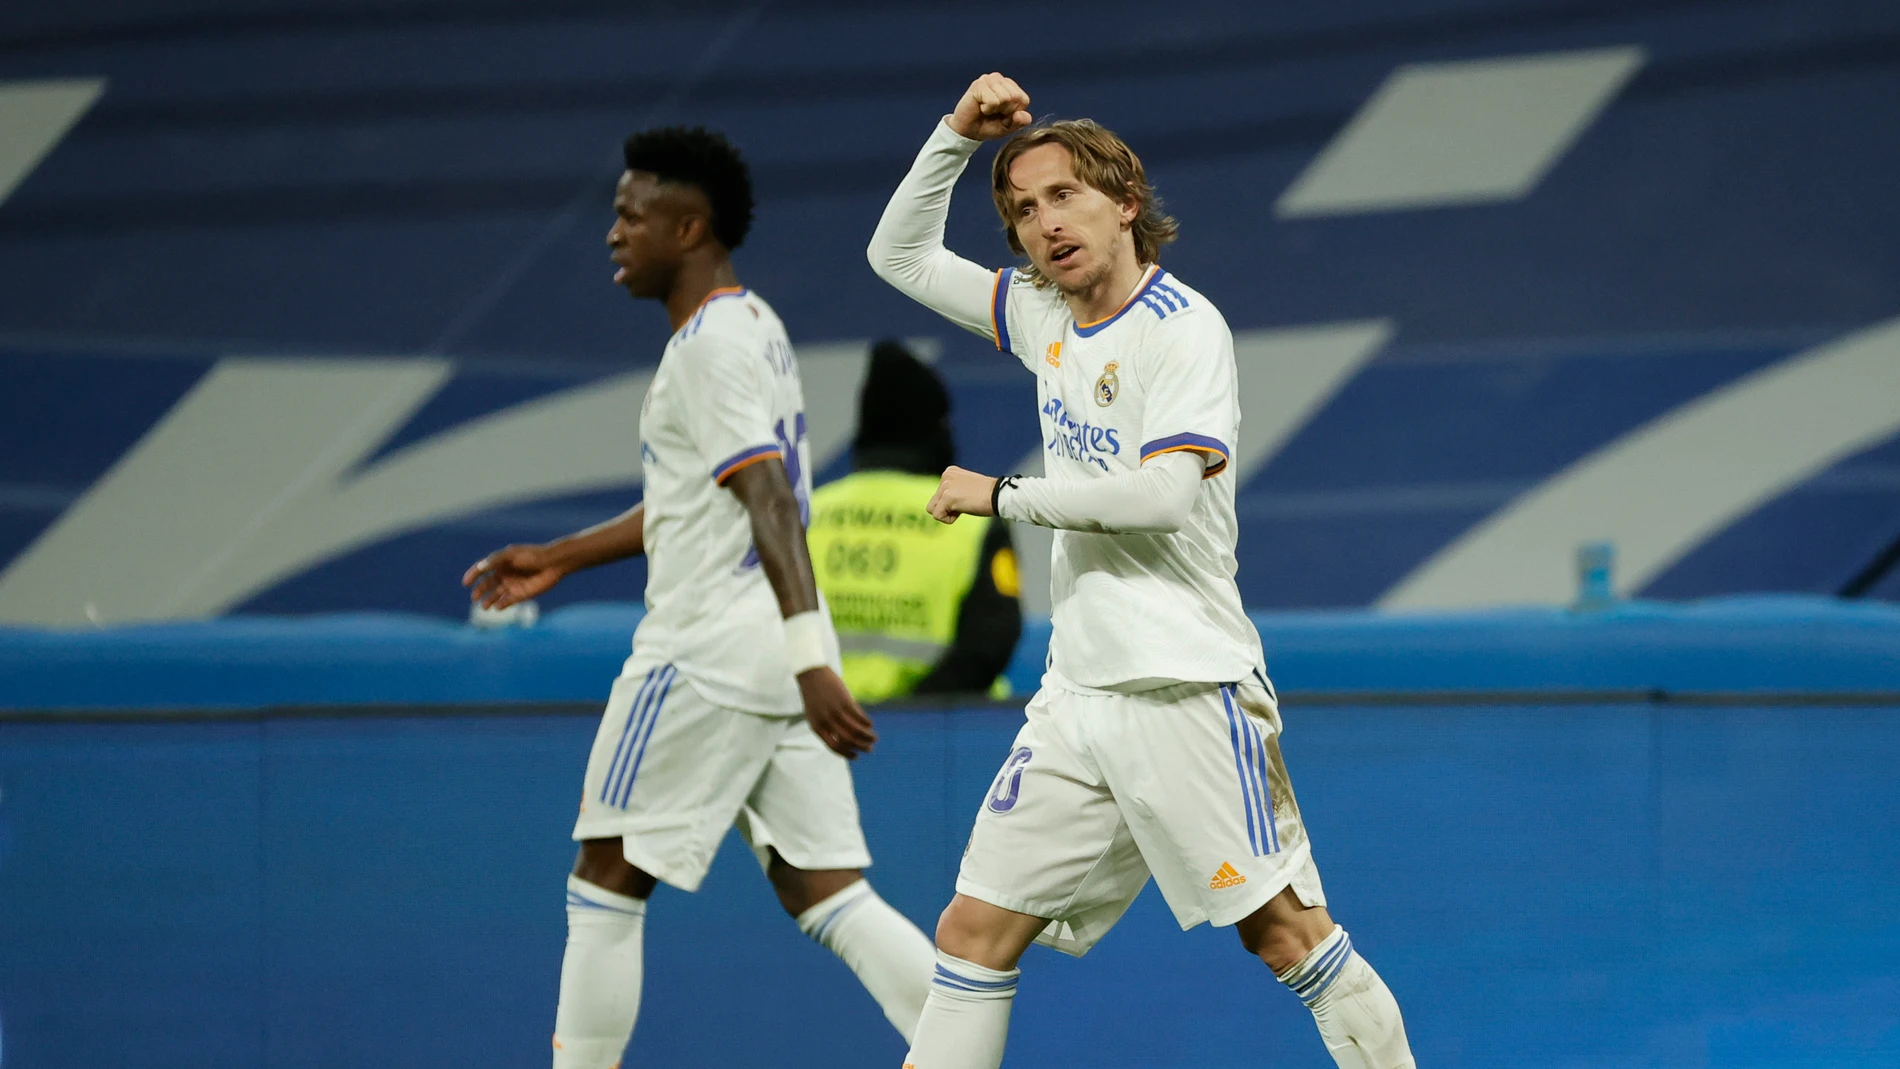 Dos golazos de Camavinga y Modric hacen más líder al Madrid ante la Real